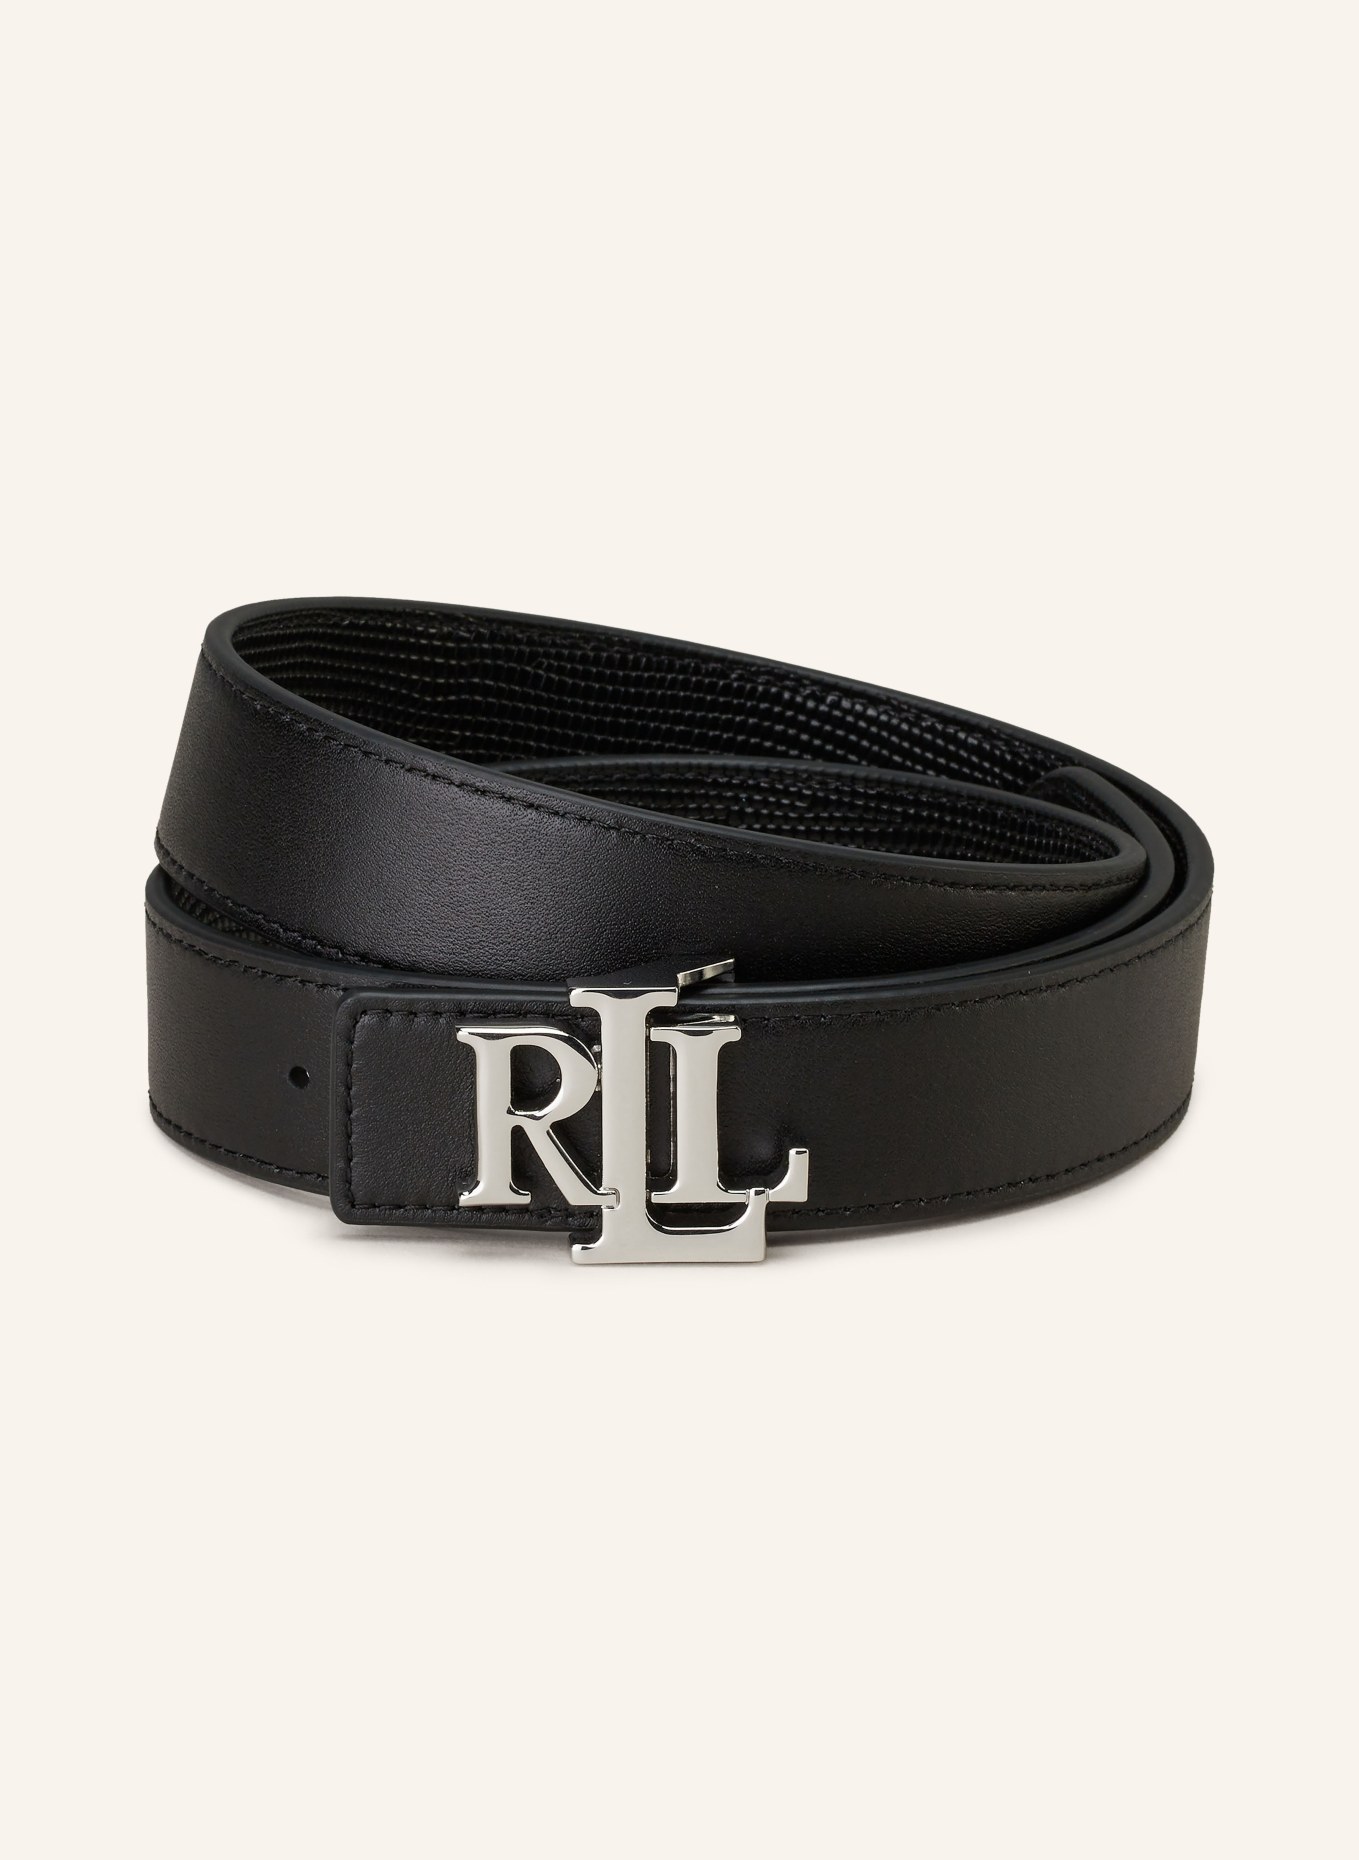 LAUREN RALPH LAUREN Reversible leather belt, Color: BLACK (Image 2)